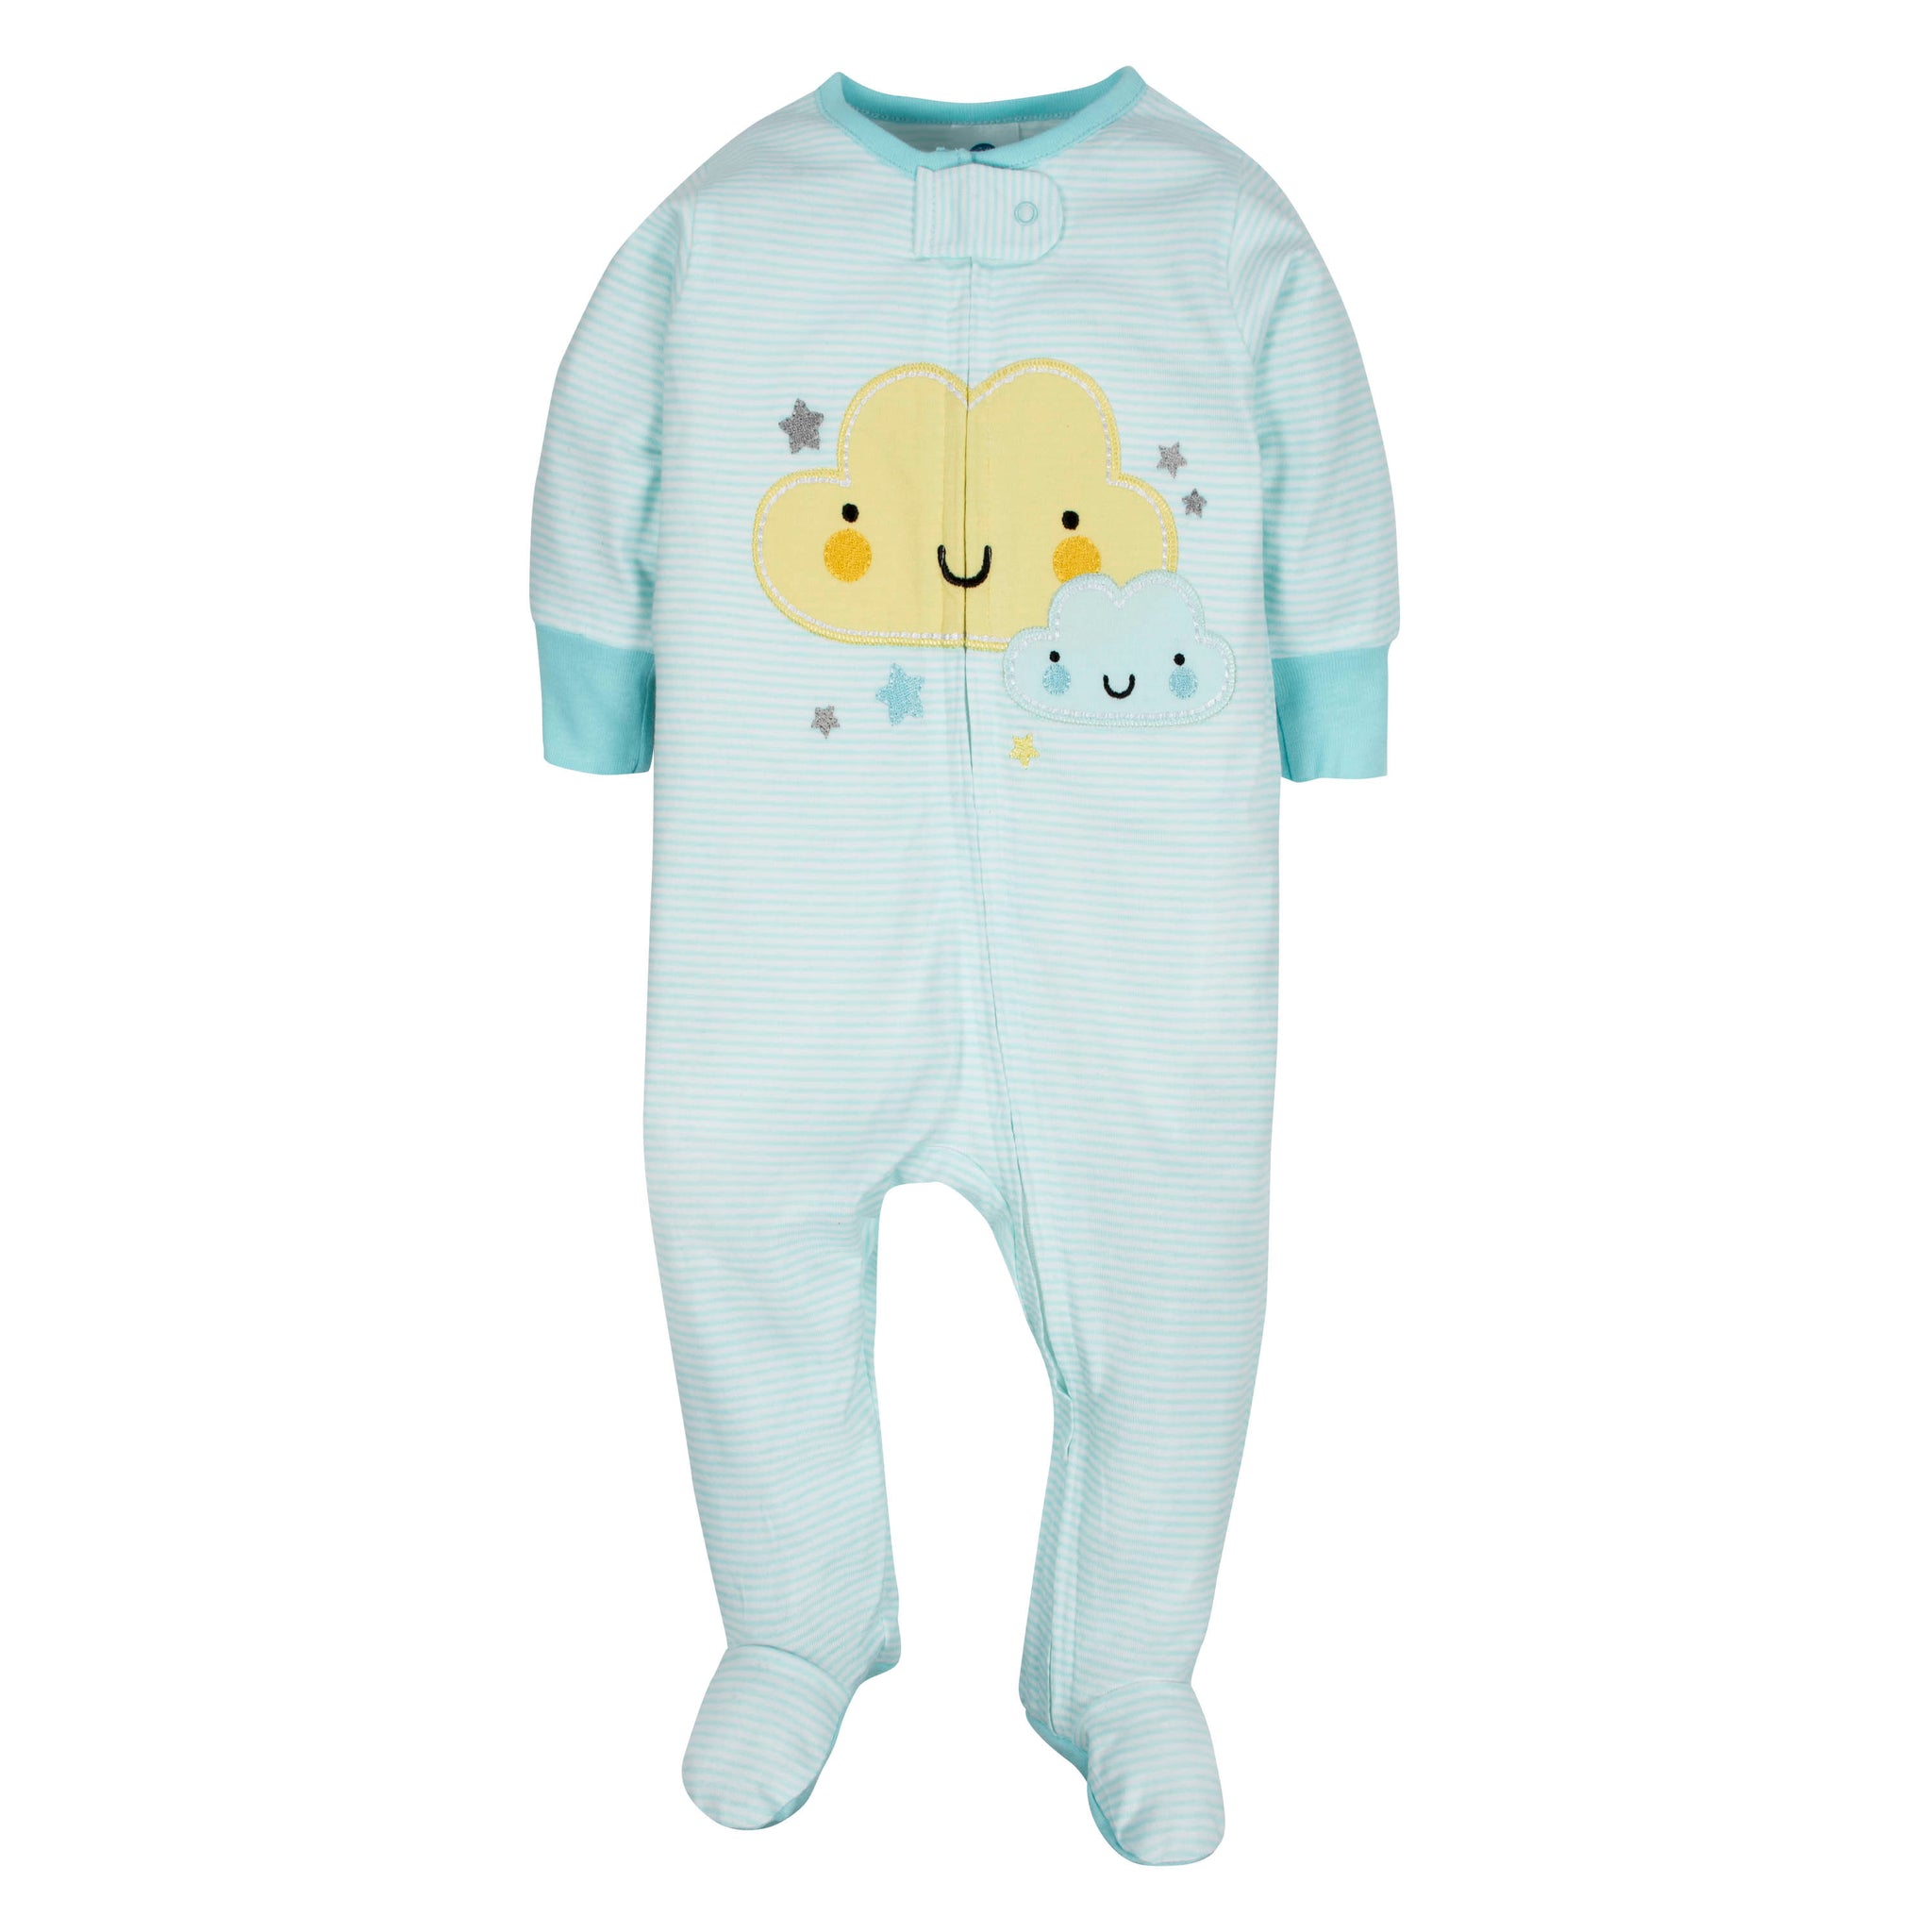 4-Pack Baby Neutral Clouds & Elephant Sleep 'n Plays-Gerber Childrenswear Wholesale